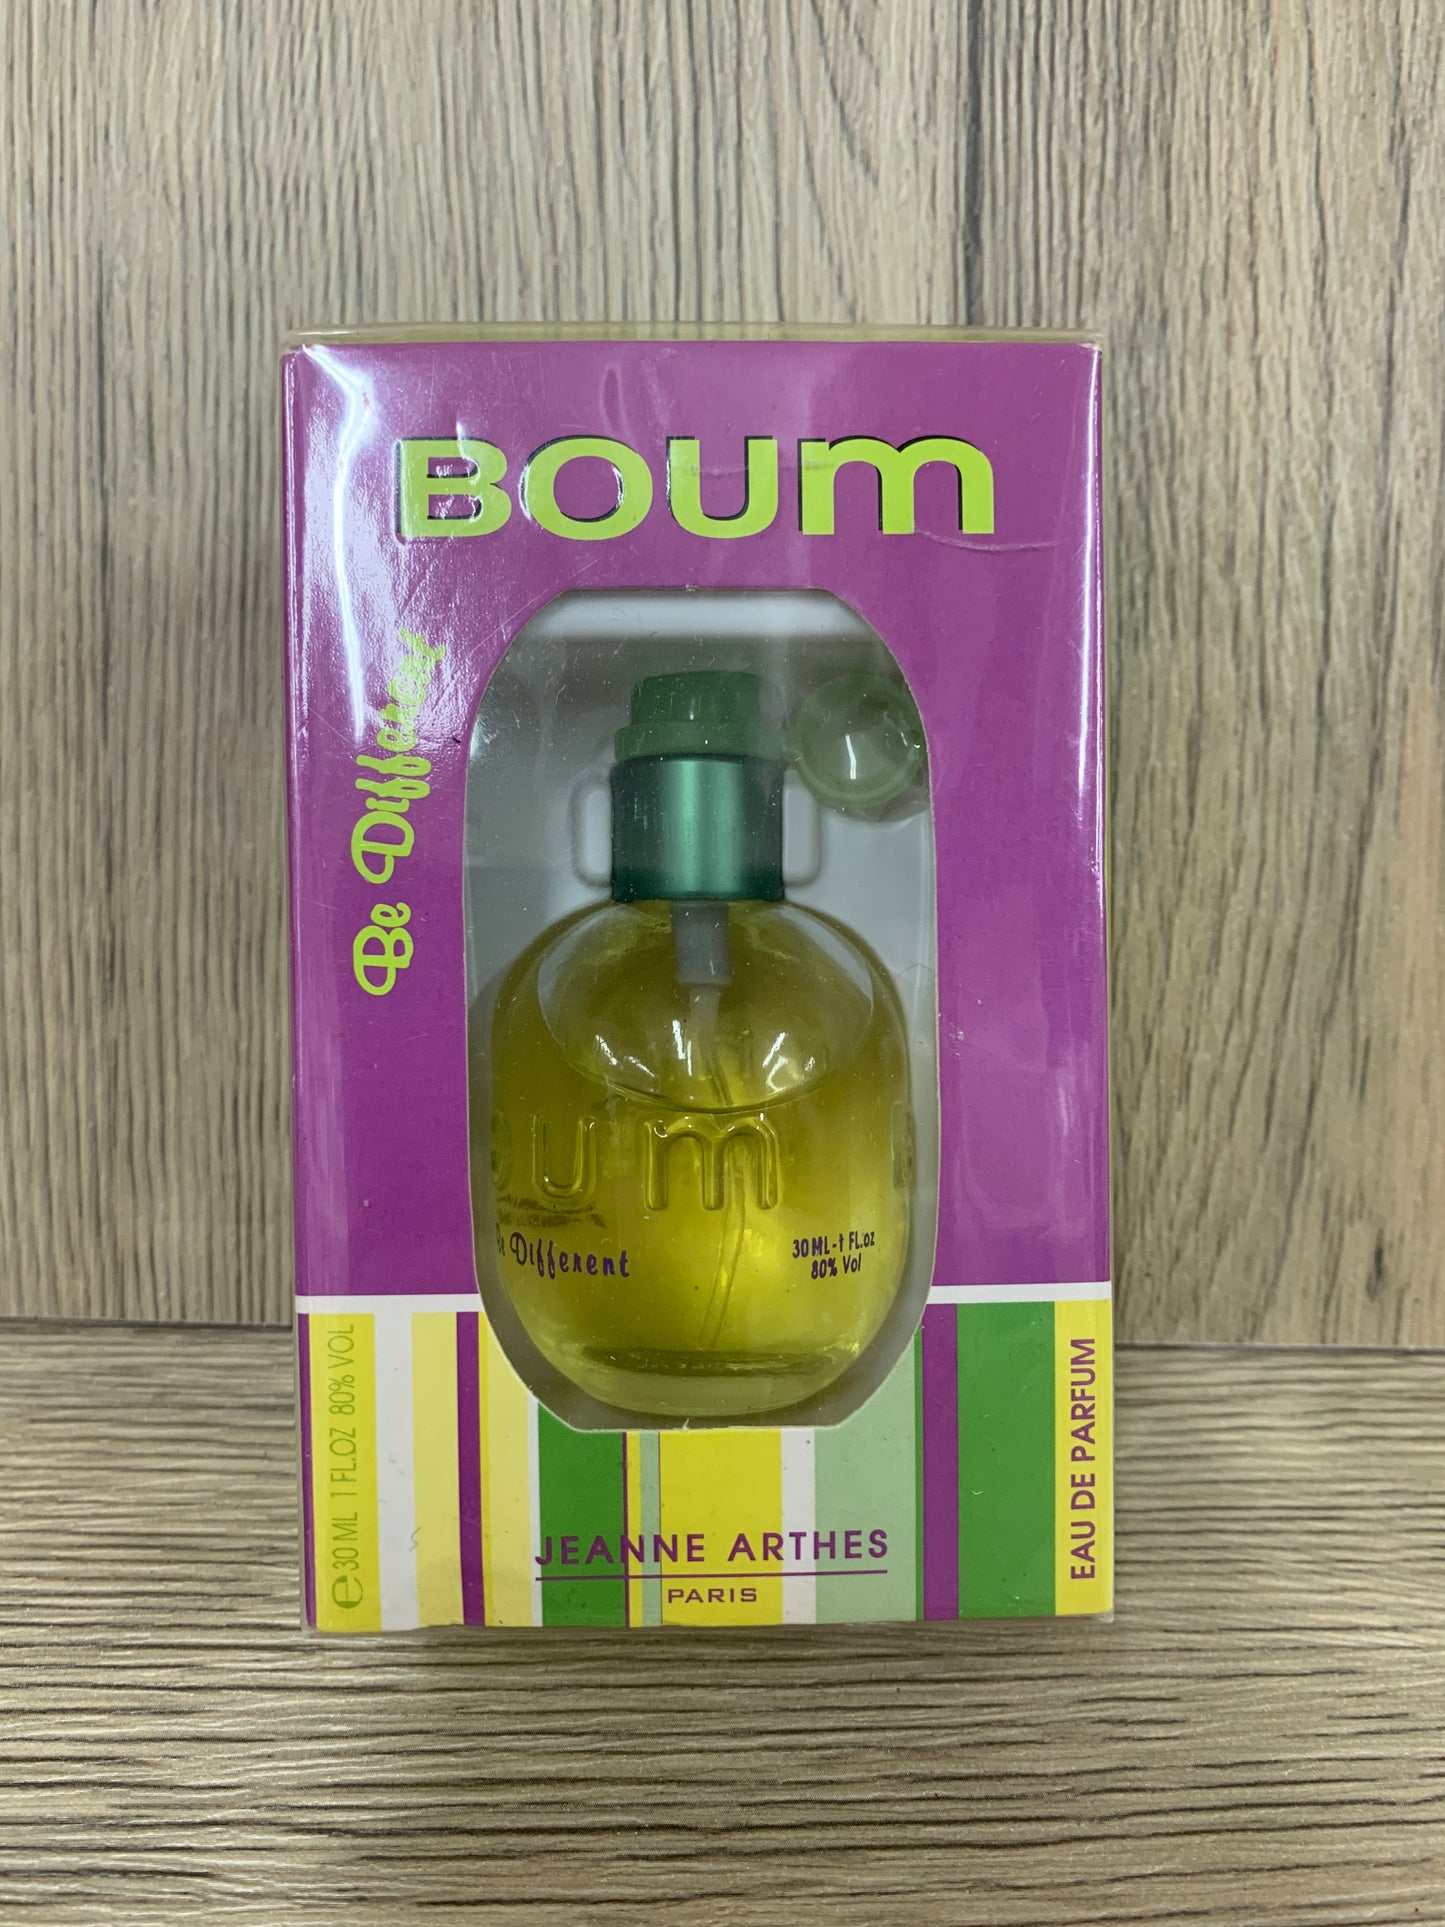 Sealed Boum Jeanne arthes 30ml 1 oz eau de parfum edp - 17May